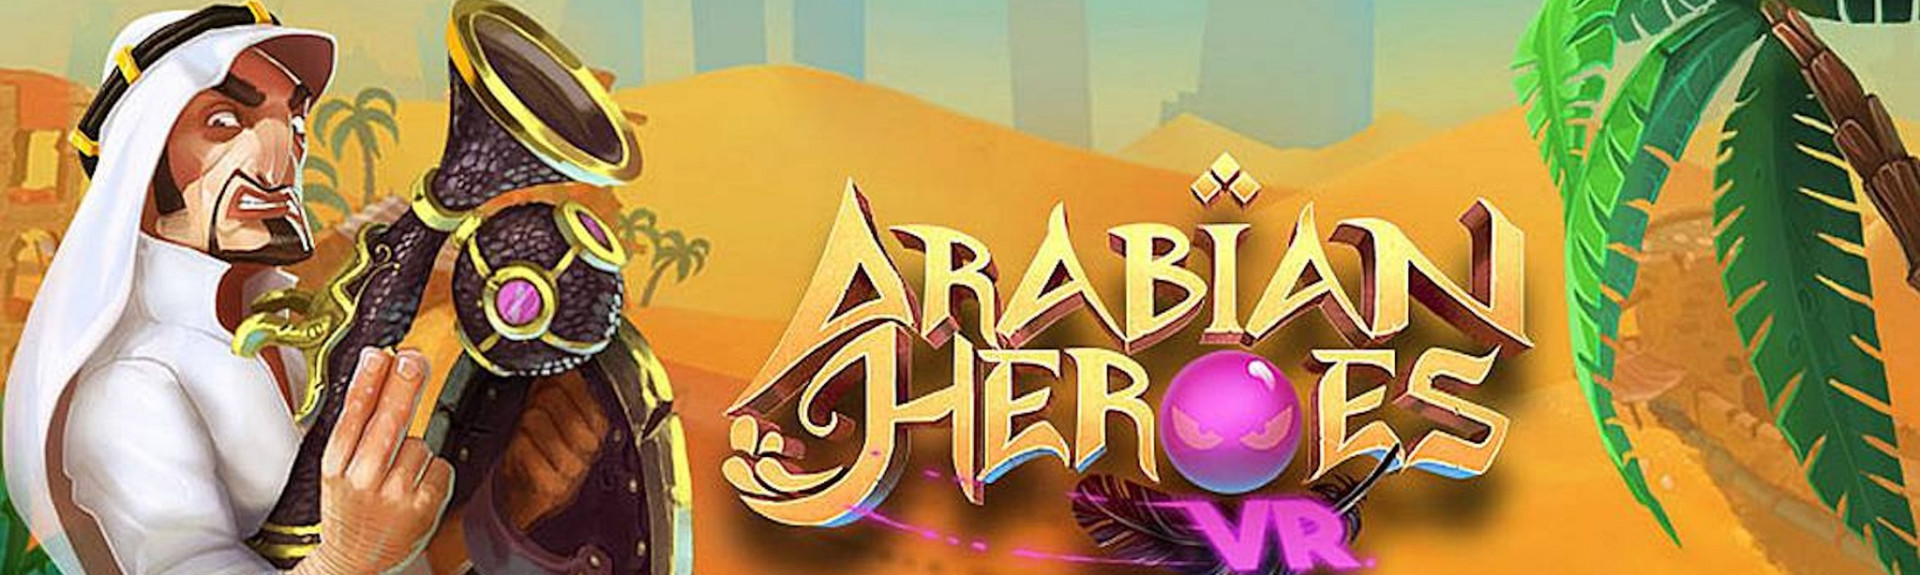 Arabian Heroes